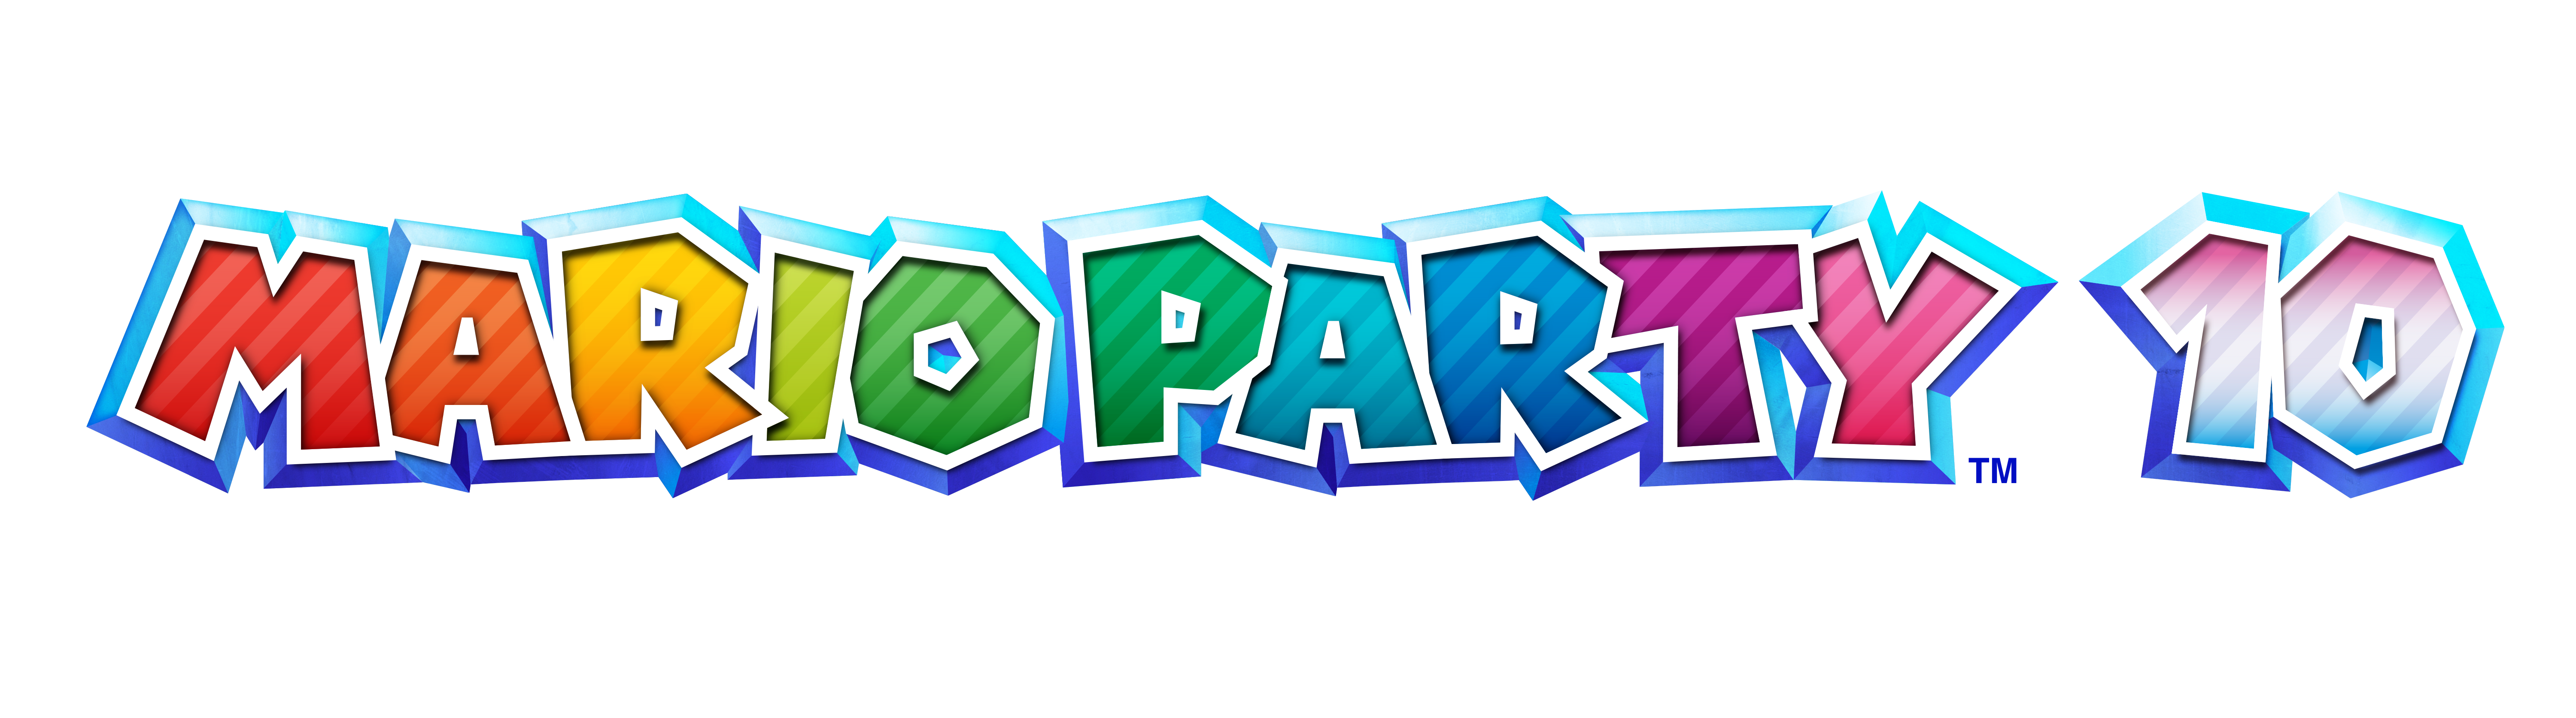 WiiU_MarioParty10_logo_E3